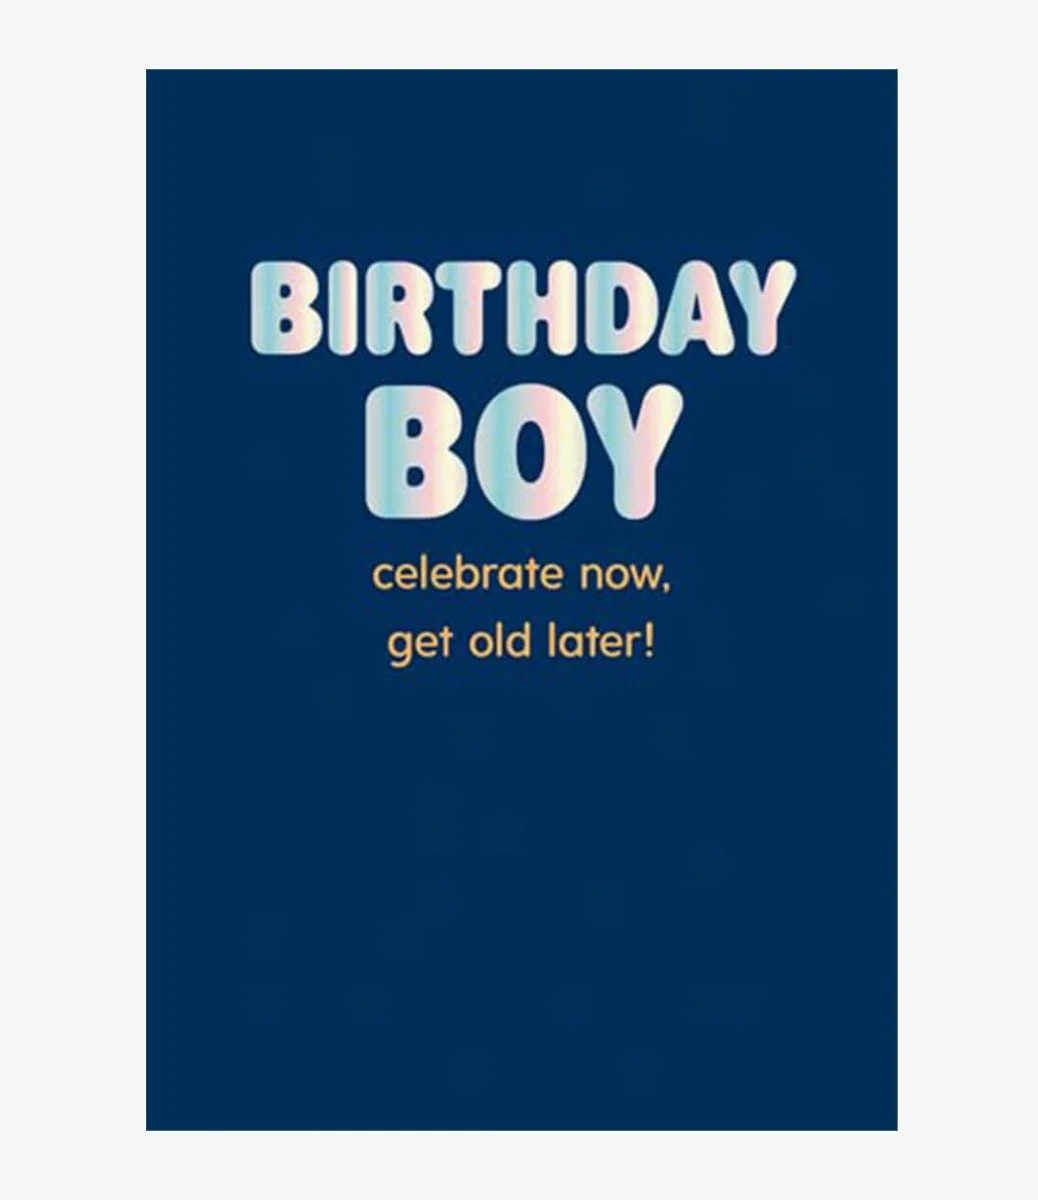 Birthday Boy Celebrate Now Greeting Card by Fuzzy Duck